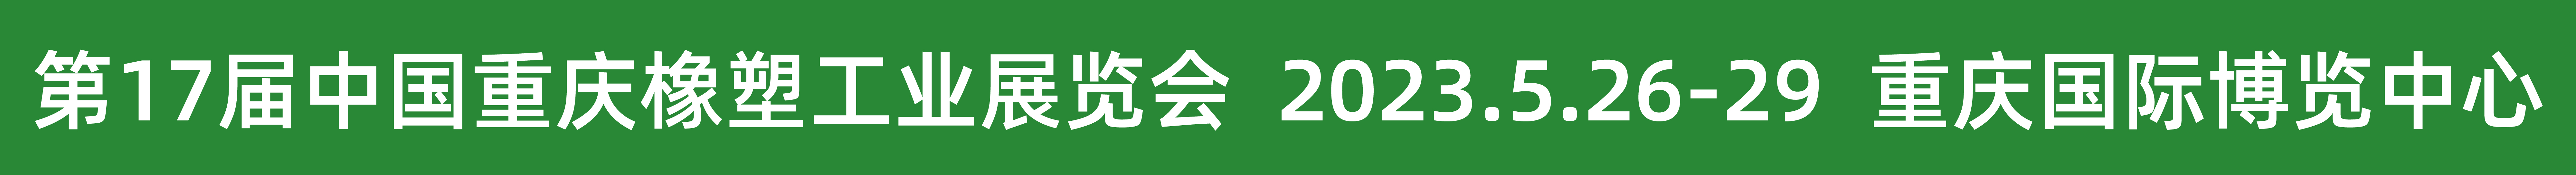 2022重庆橡塑展